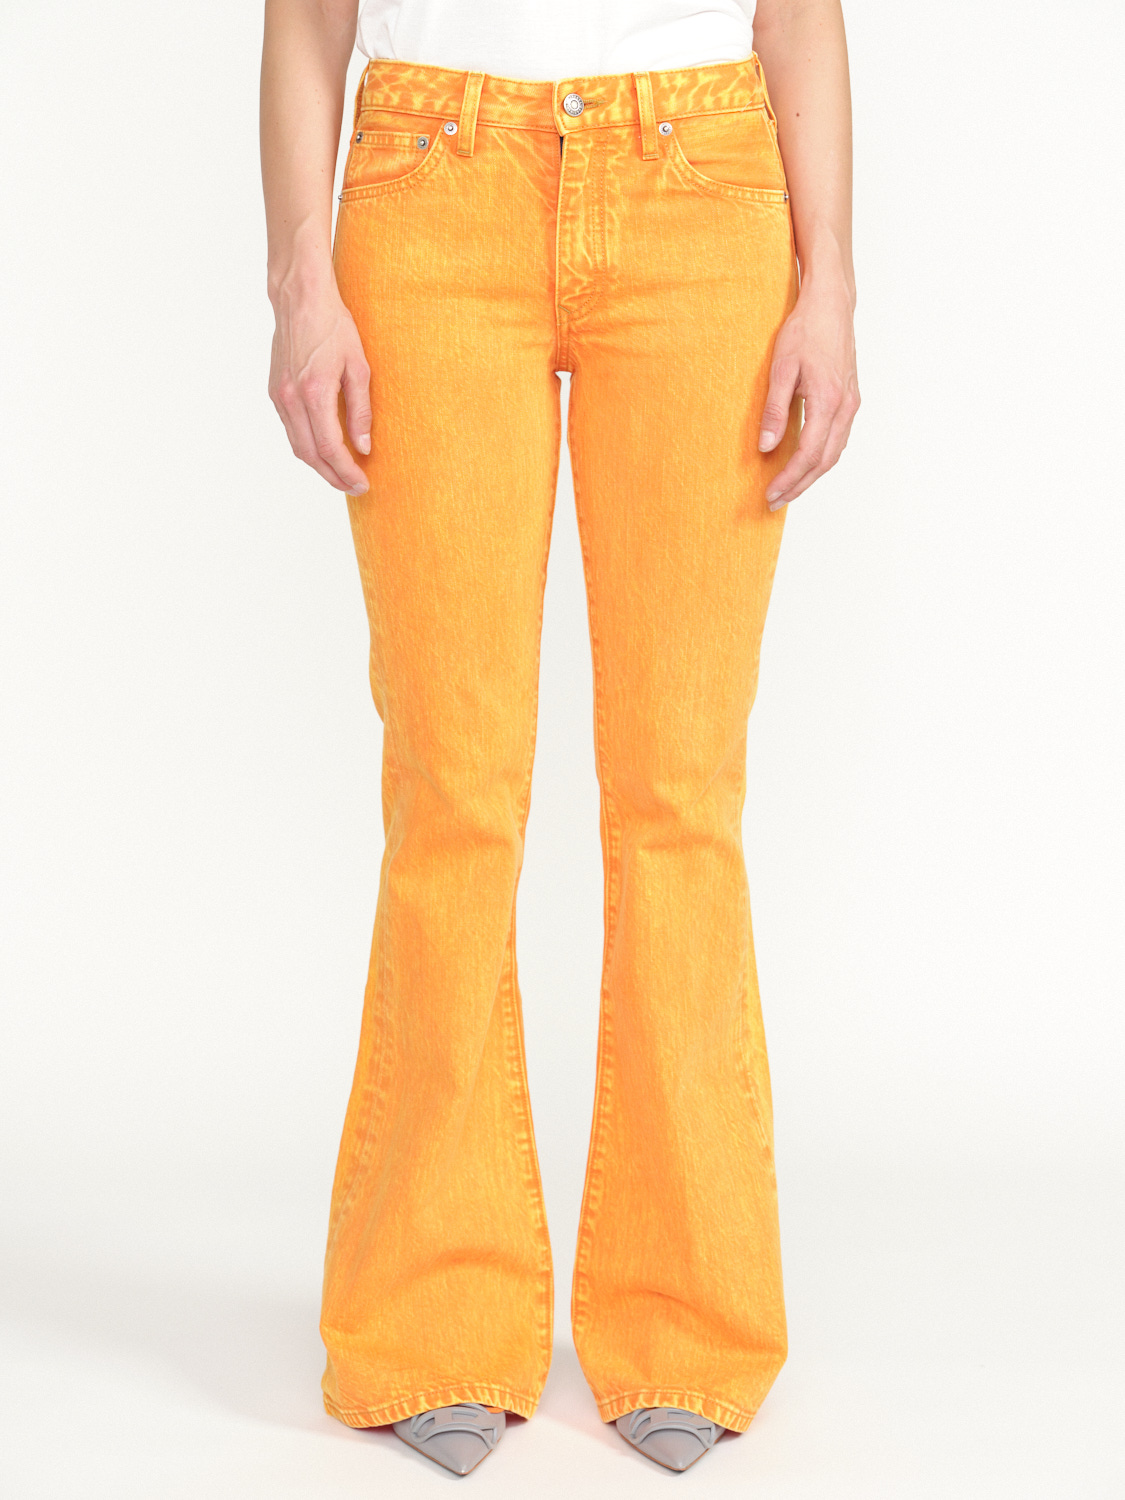 Cout De La Liberte Britney - Jeans-Schlaghose mit Verwaschener-Optik orange 25